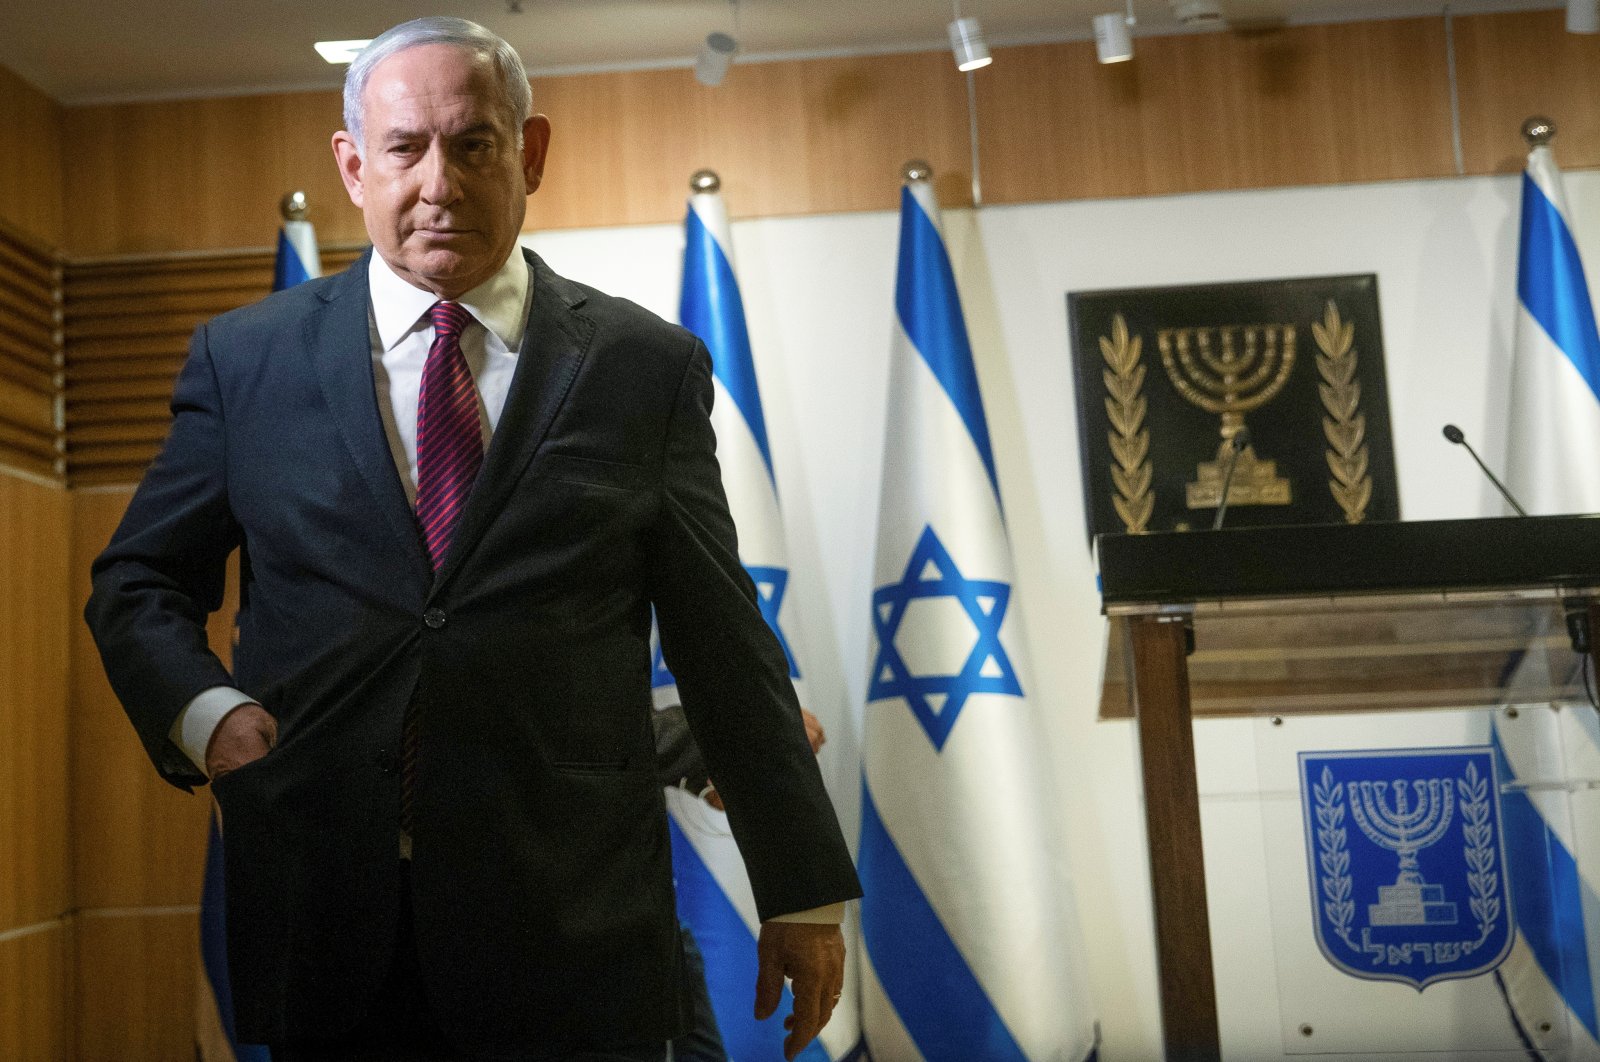 Israeli Prime Minister Benjamin Netanyahu walks after he delivered a statement at the Knesset (Israel's parliament) in Jerusalem, December 22, 2020. (Yonatan Sindel/Pool via Reuters)